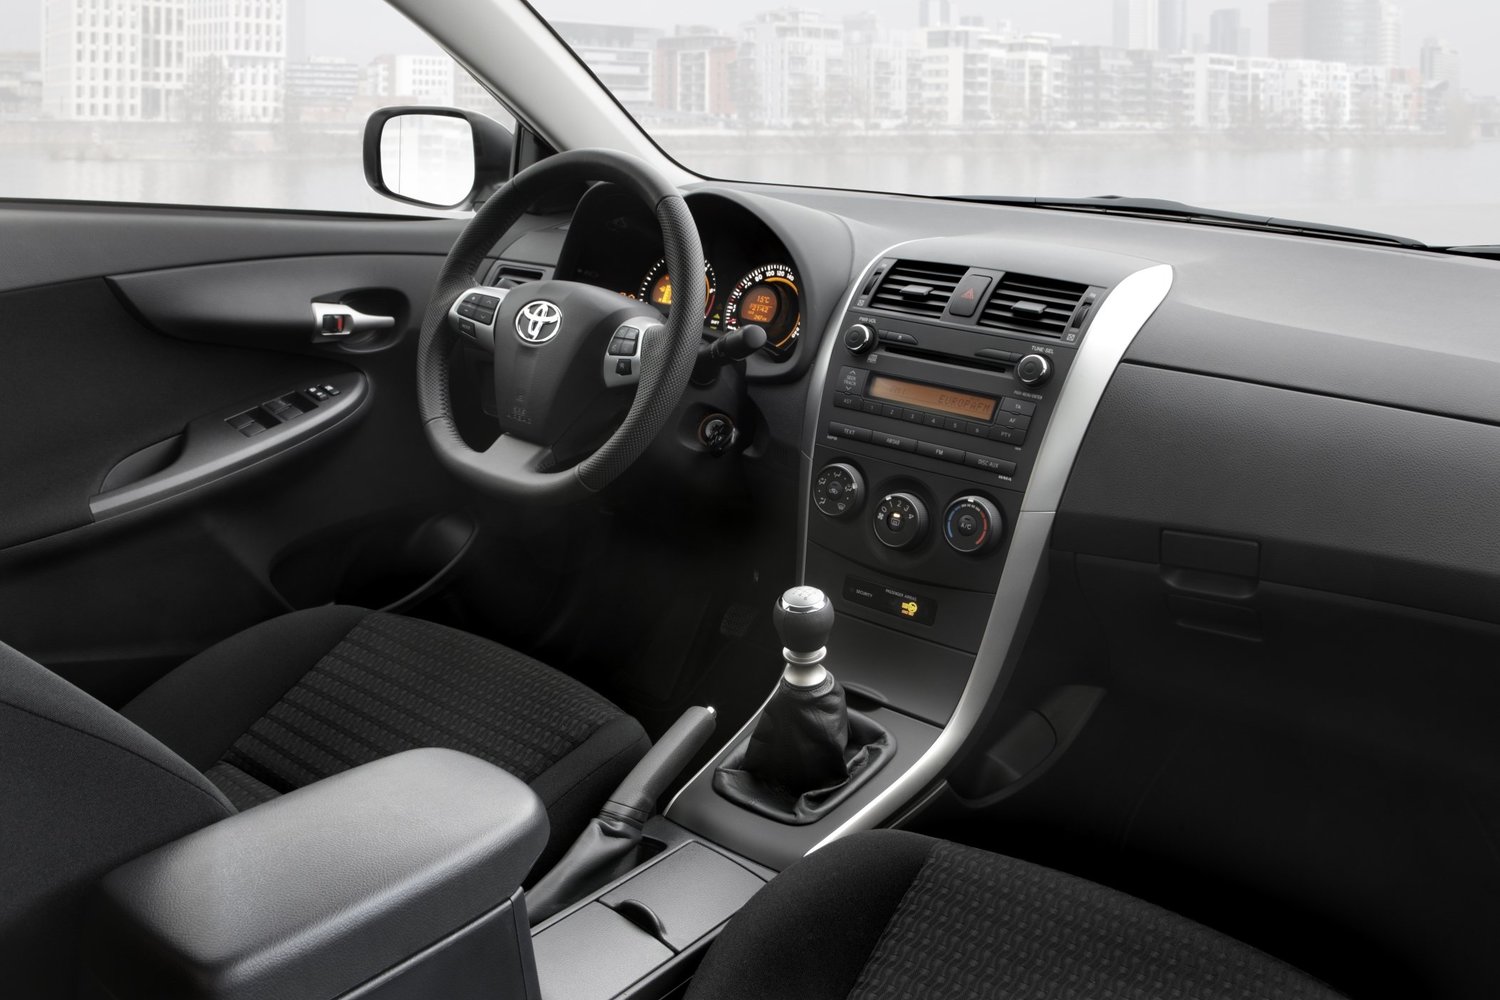 седан Toyota Corolla 2010 - 2013г выпуска модификация 1.4 AT (90 л.с.)